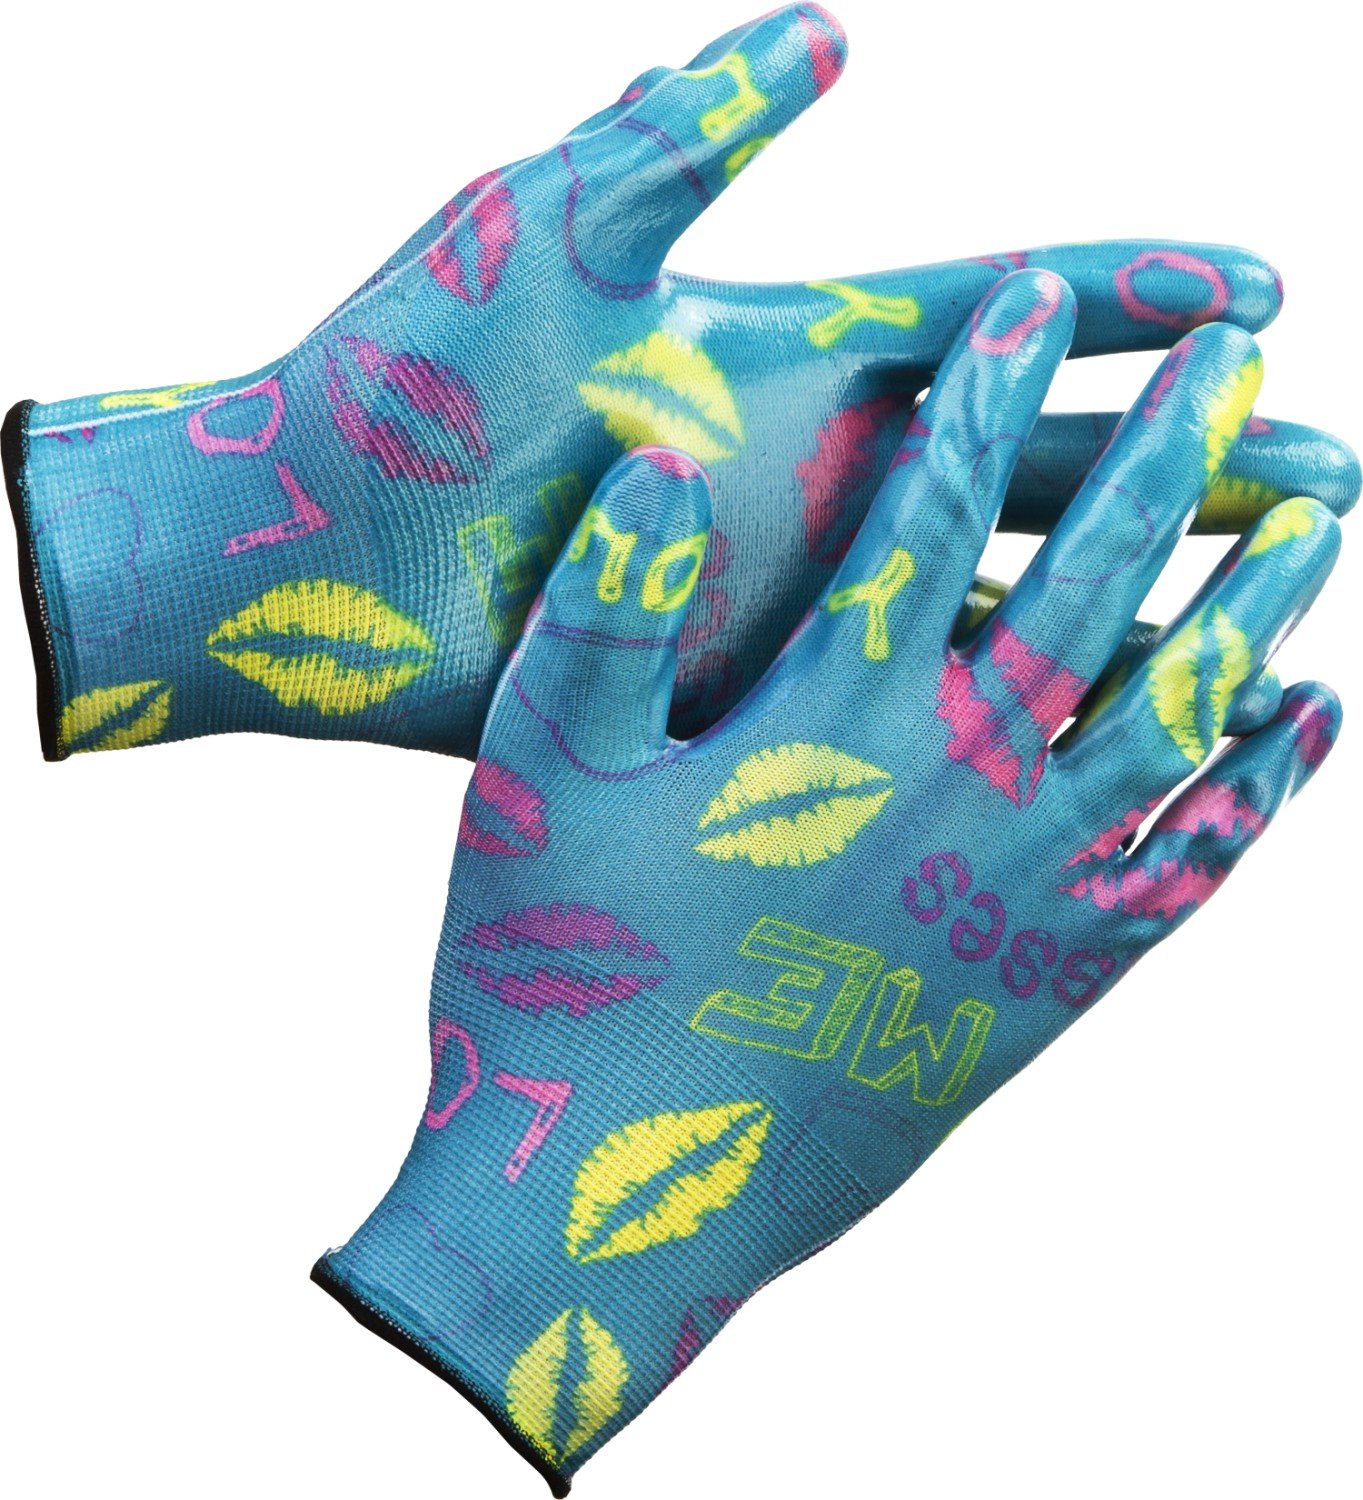 Садовые перчатки GRINDA р. S-M прозрачное нитриловое покрытие синие (11296-S)Купить